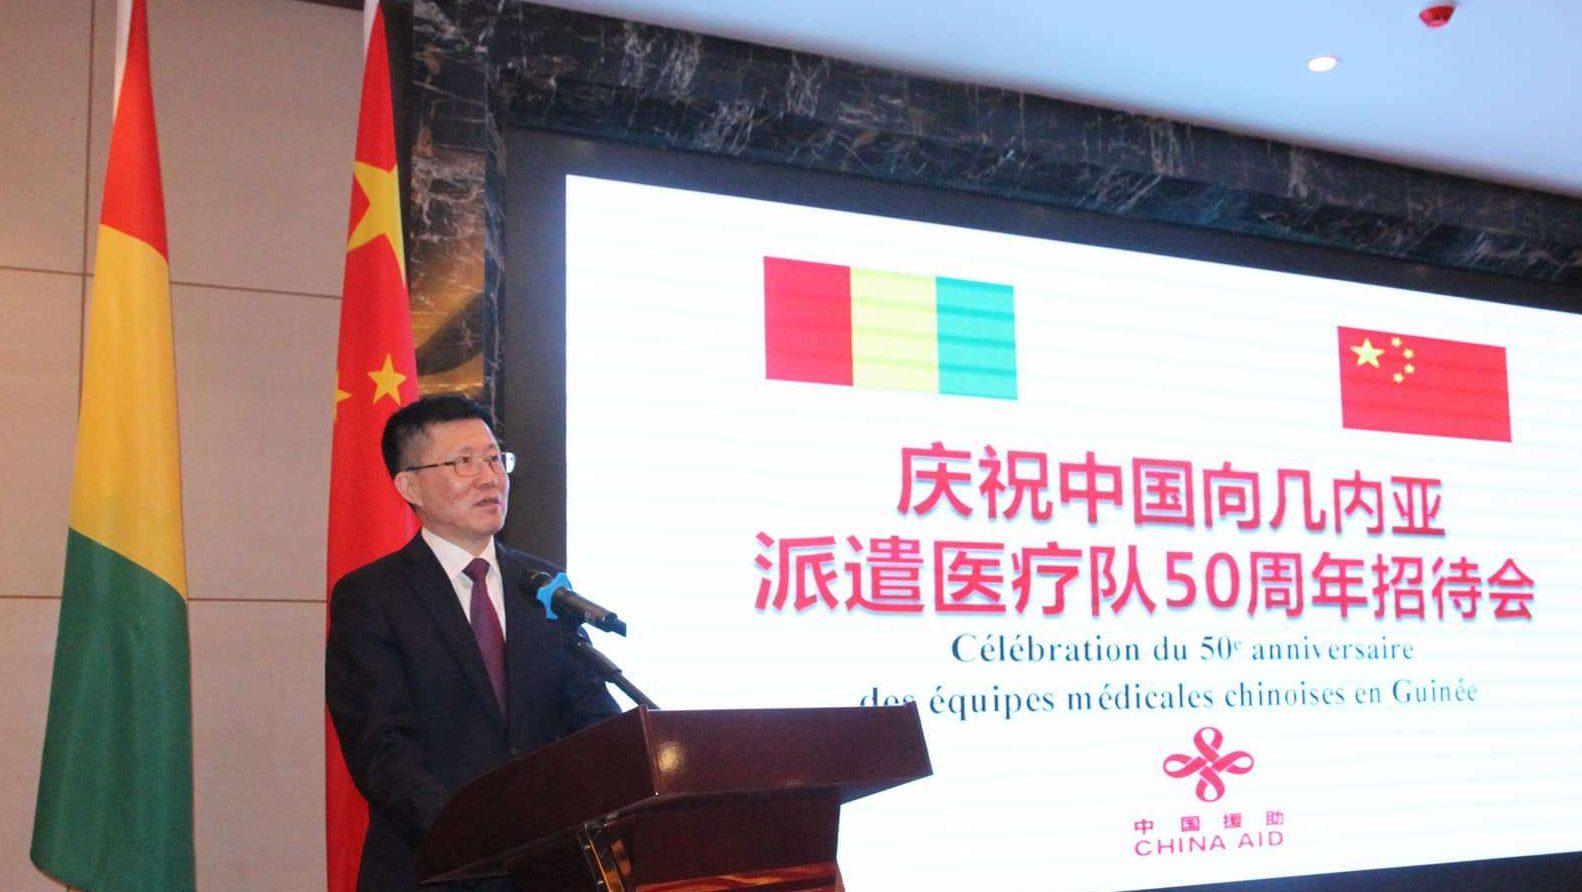 La Chine redouble d’effort en Guinée dans le domaine médical